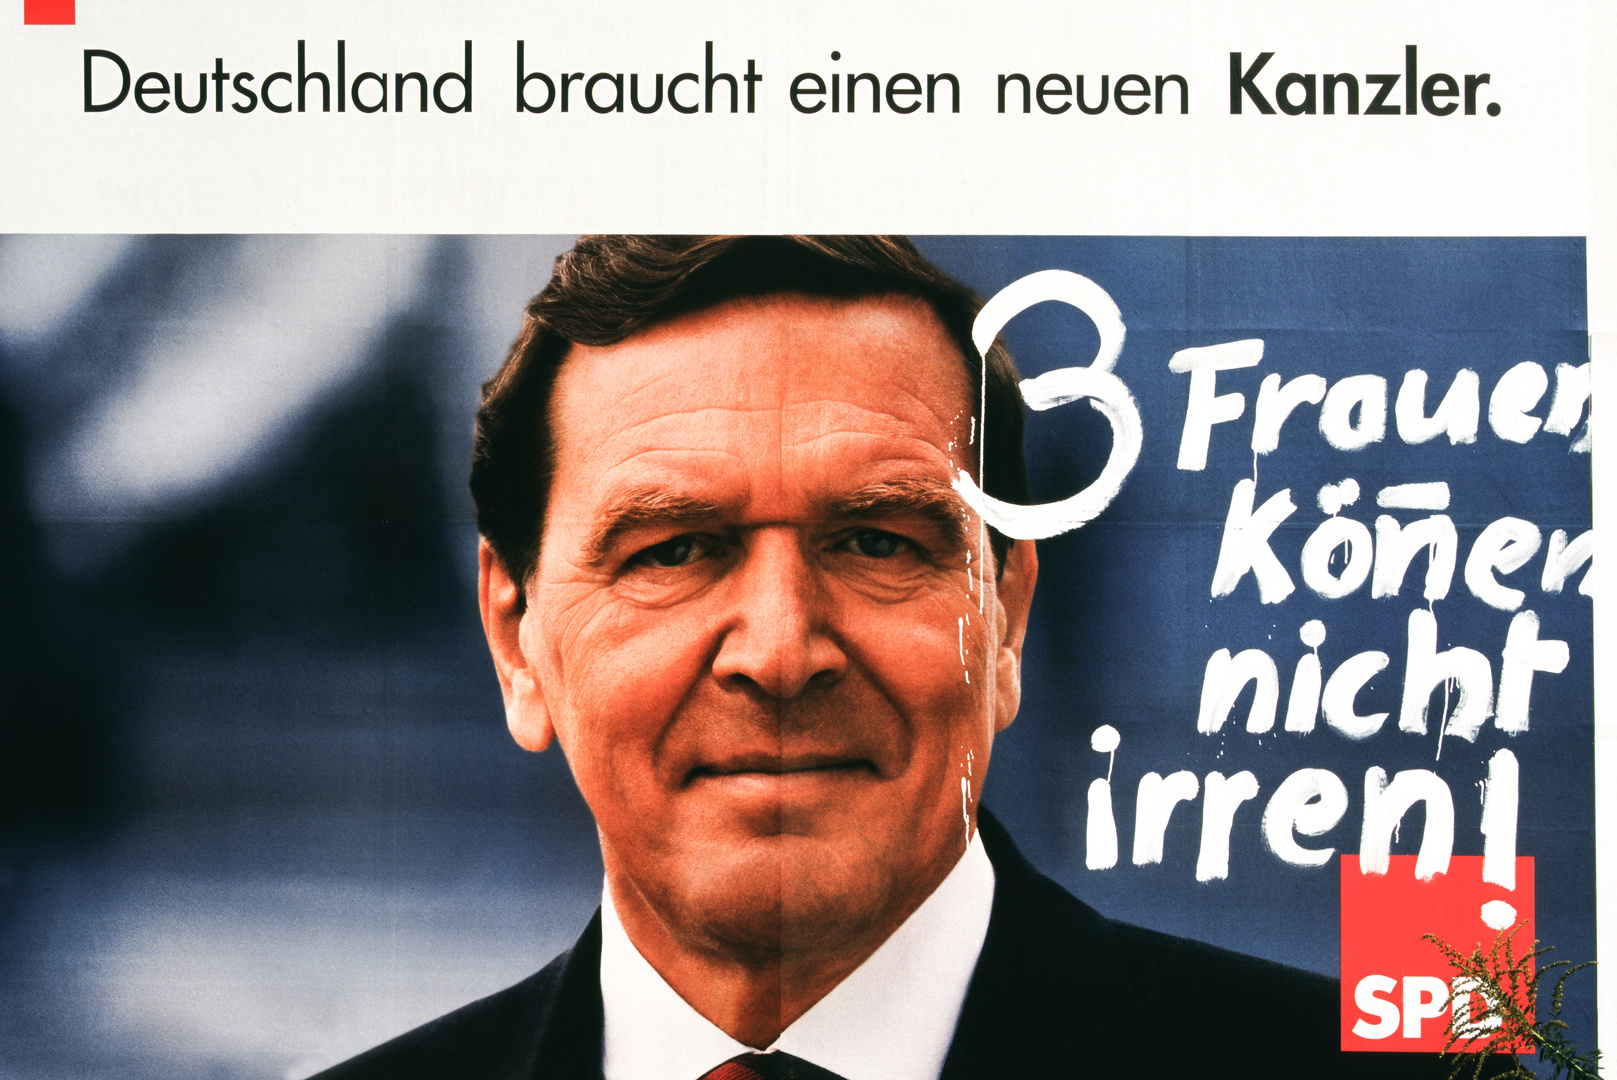 Schröder wird Kanzler